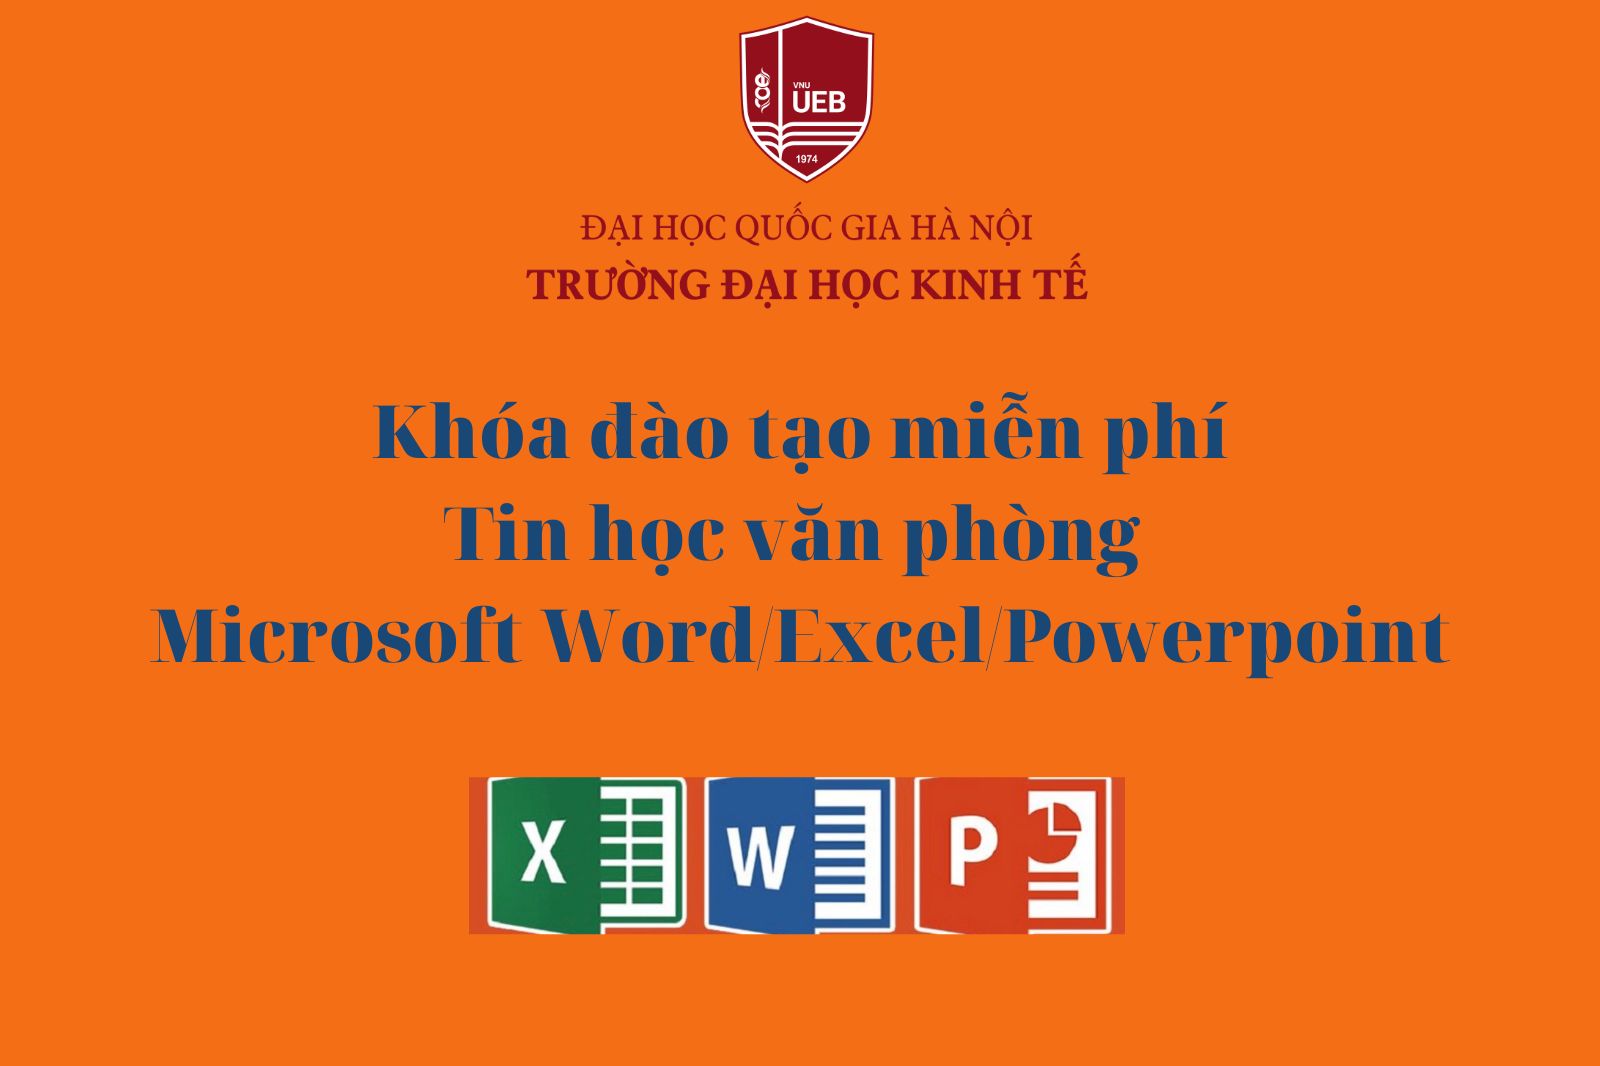 Khóa đào tạo Tin học văn phòng Microsoft Word, Excel, Powerpoint - Quý 2/2022  miễn phí dành cho sinh viên